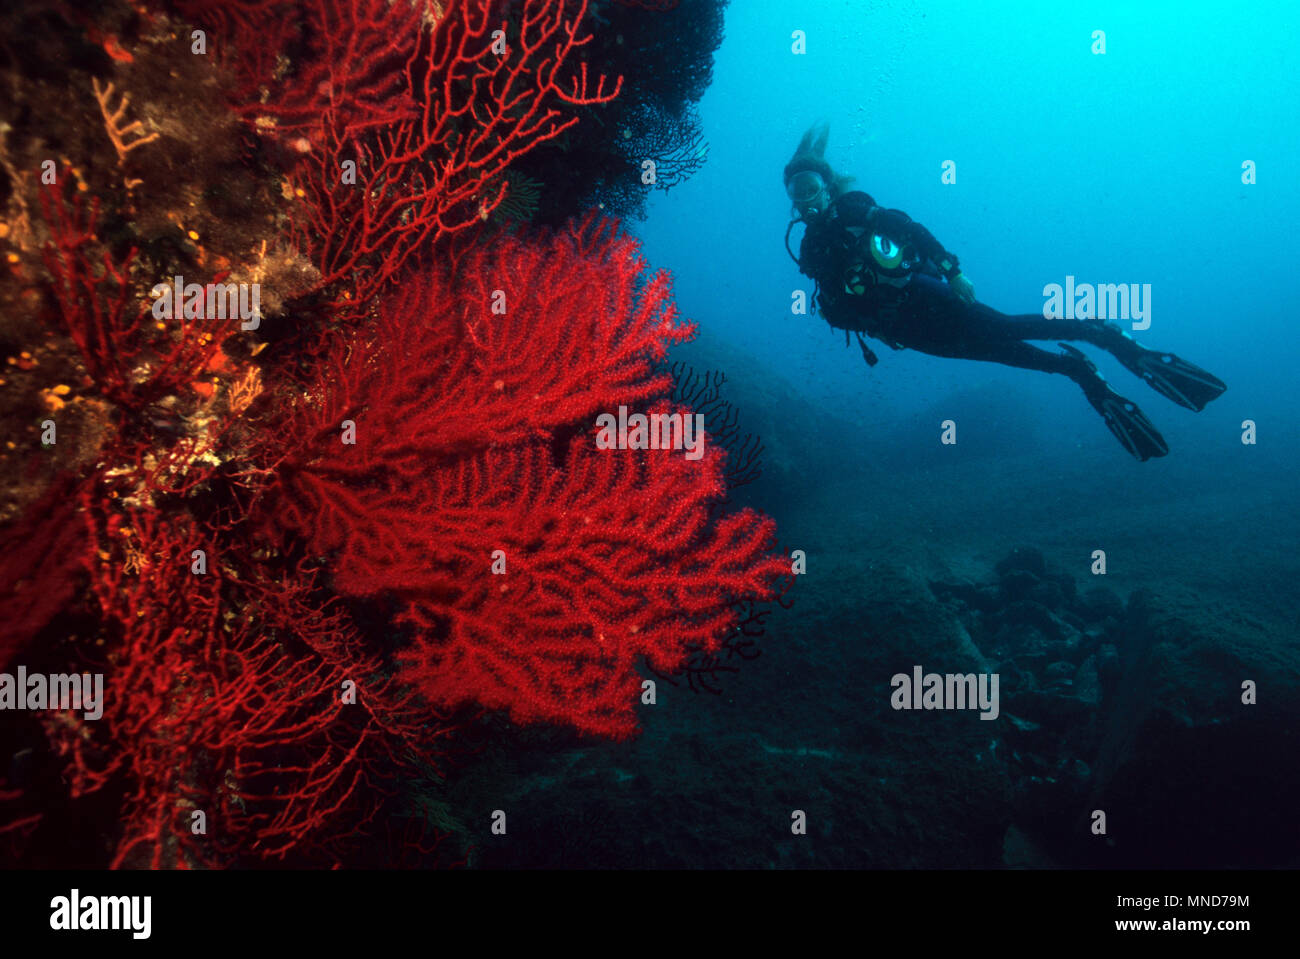 diver and red fan coral in the Mediterranean |Taucher und Rote Fächerkoralle im Mittelmeer | (Paramunicea clavata) Stock Photo